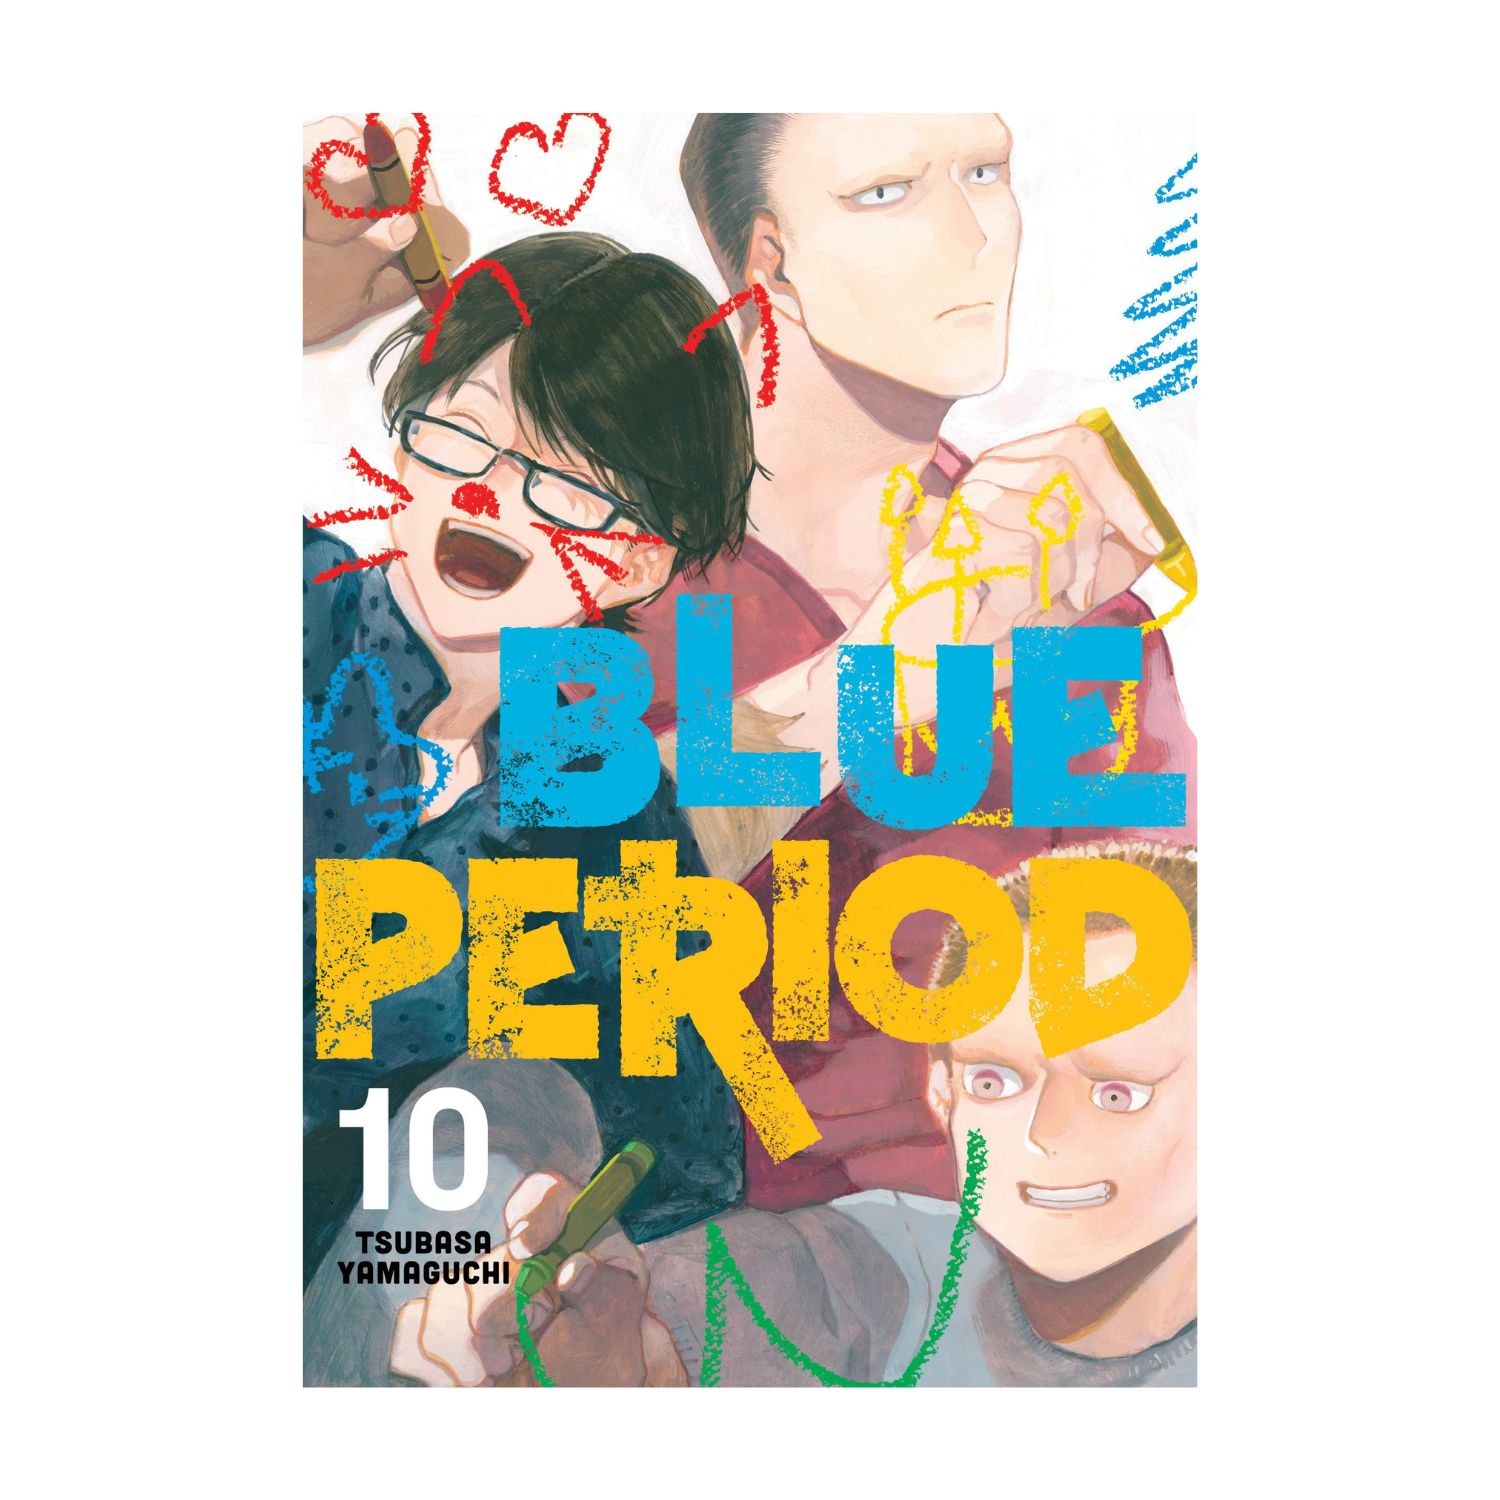 Blue Period Vol Nerdom